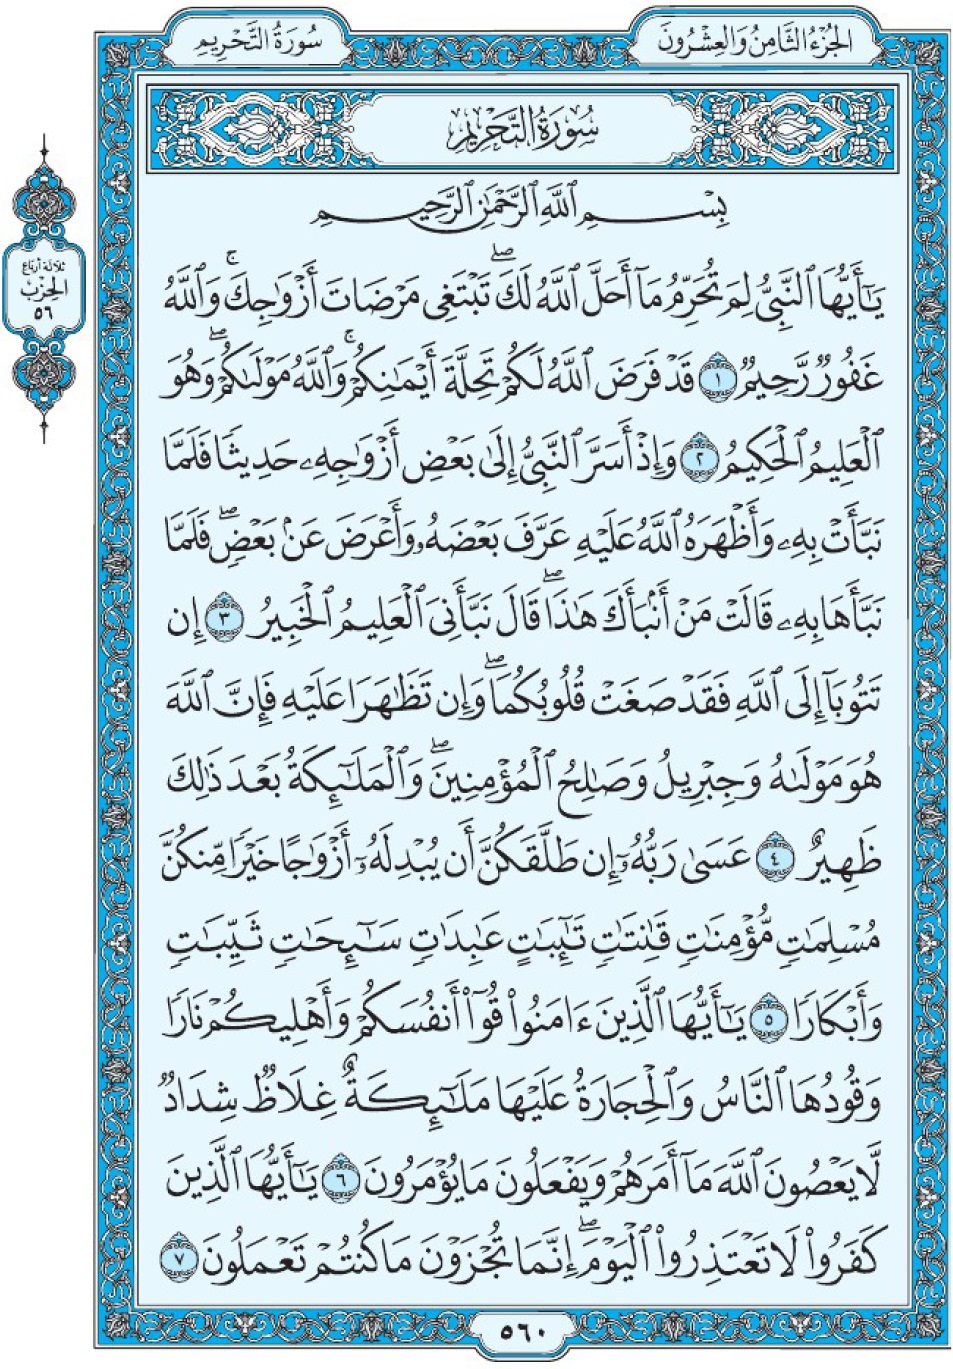 Коран Мединский мусхаф страница 560, сура 66 ат-Тахрим سورة ٦٦ التحريم 